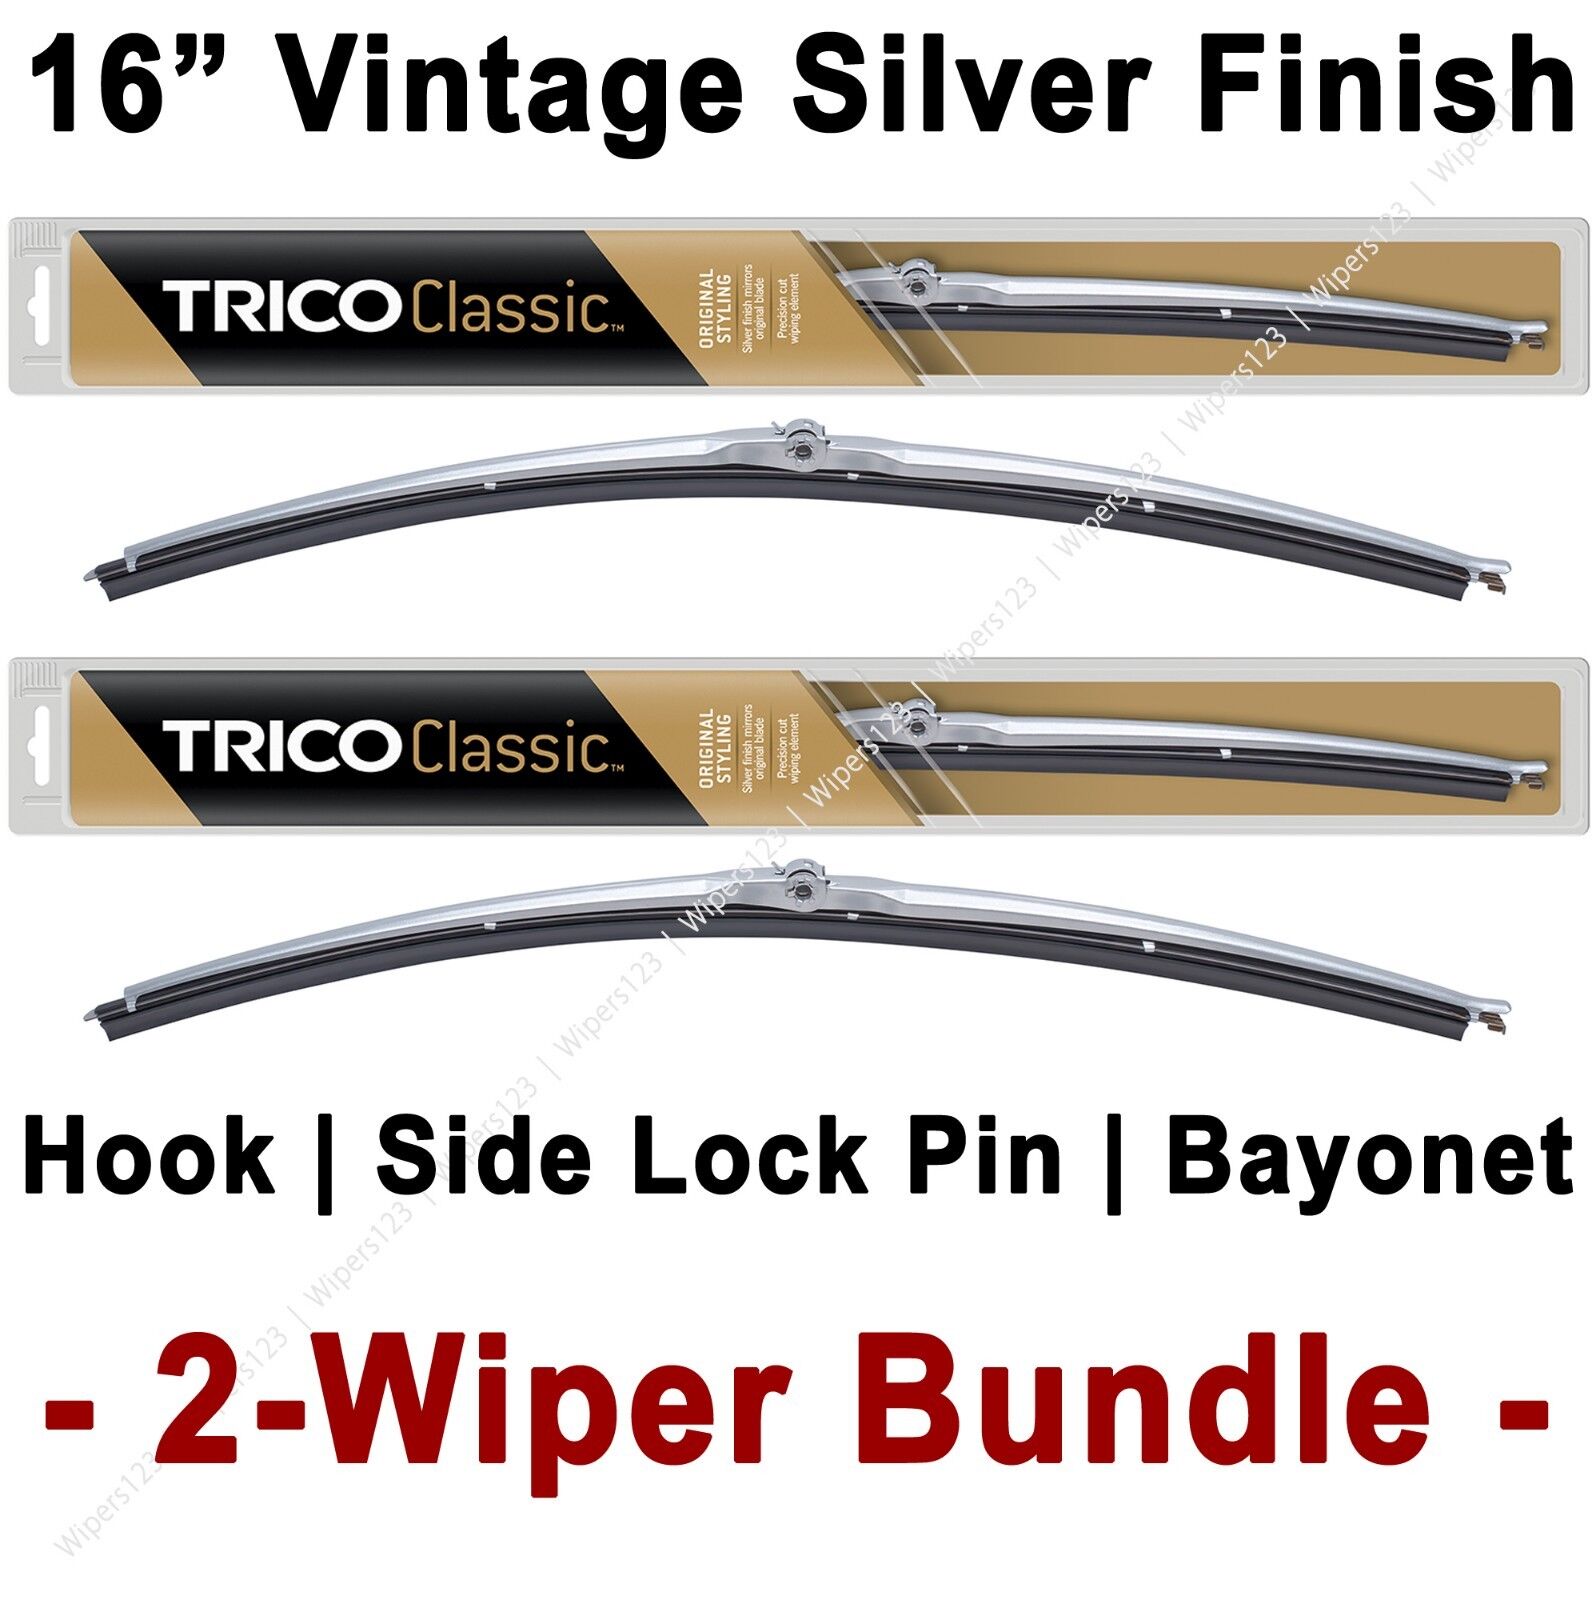 2-Wiper Bundle: TRICO Classic Wiper Blades 16\